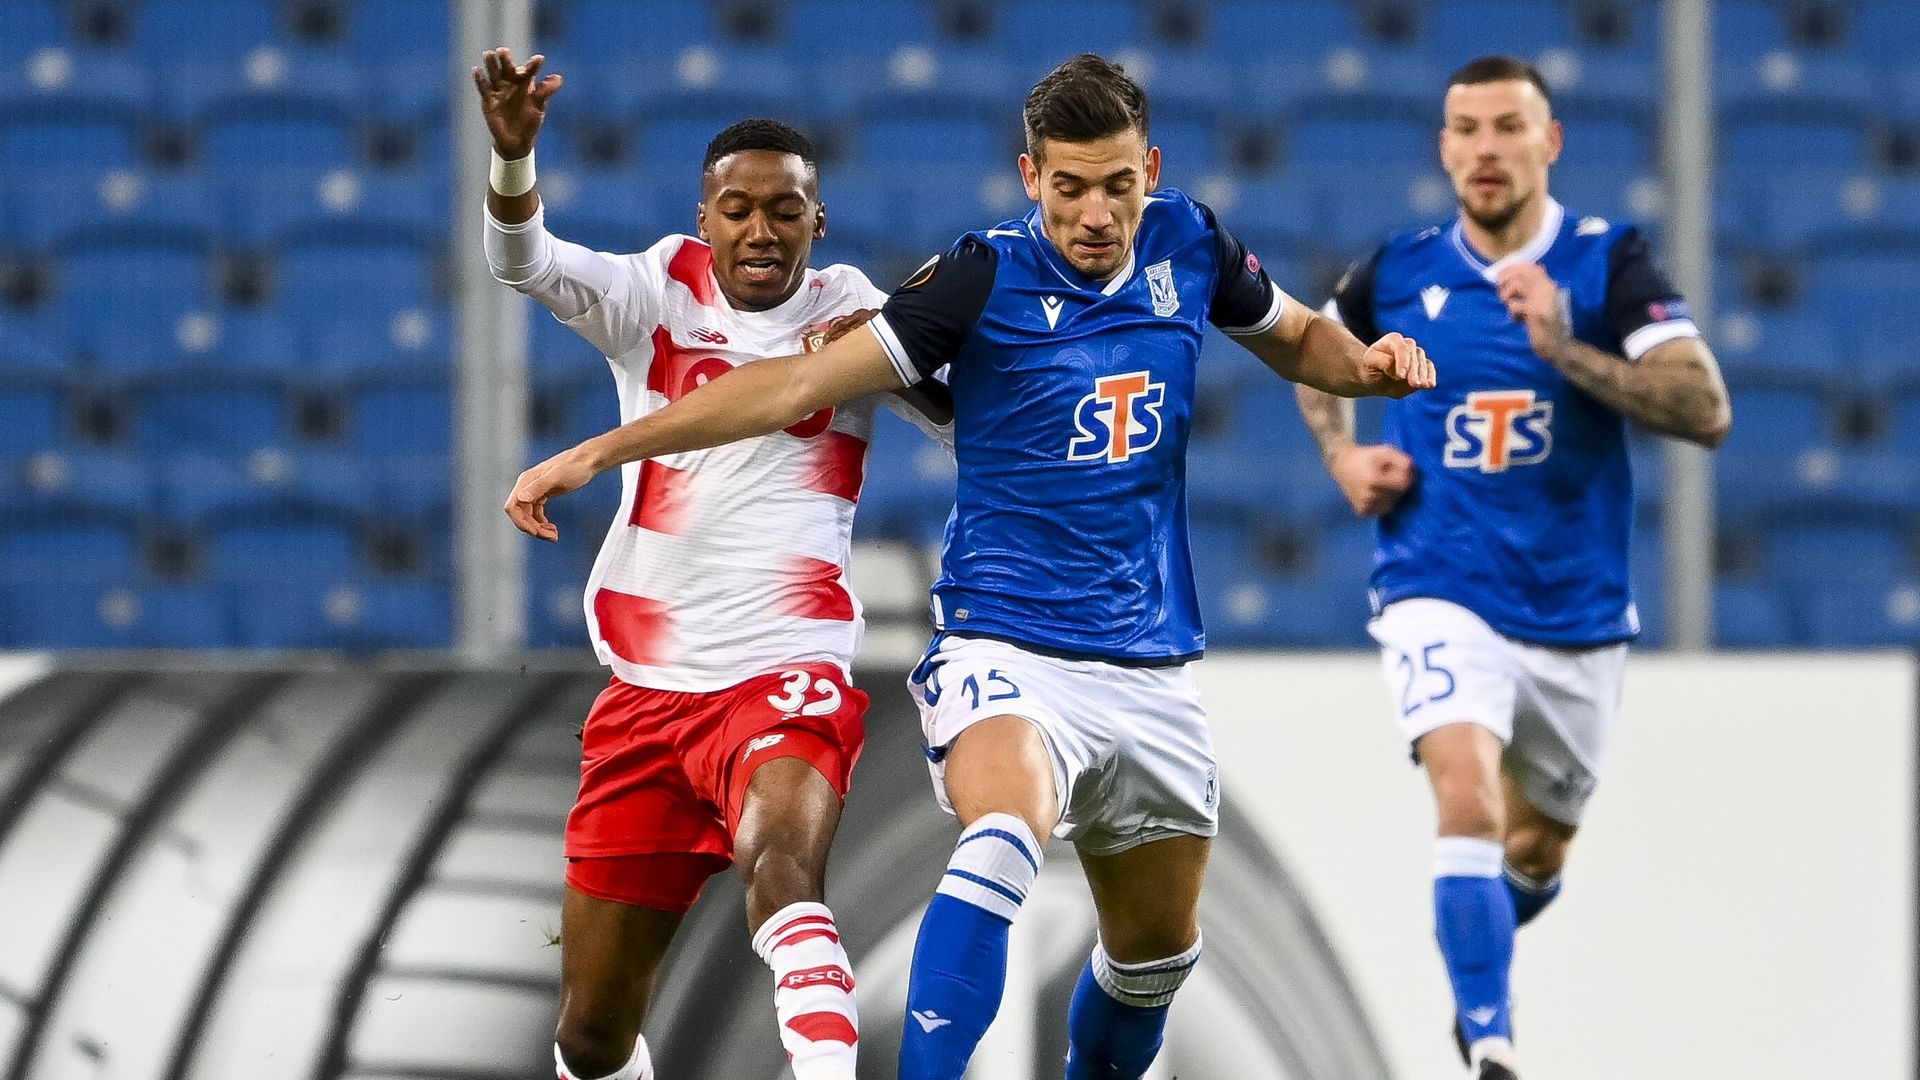 Europa League : Plombé par une défense aux abois, le Standard s’incline contre Lech Poznan